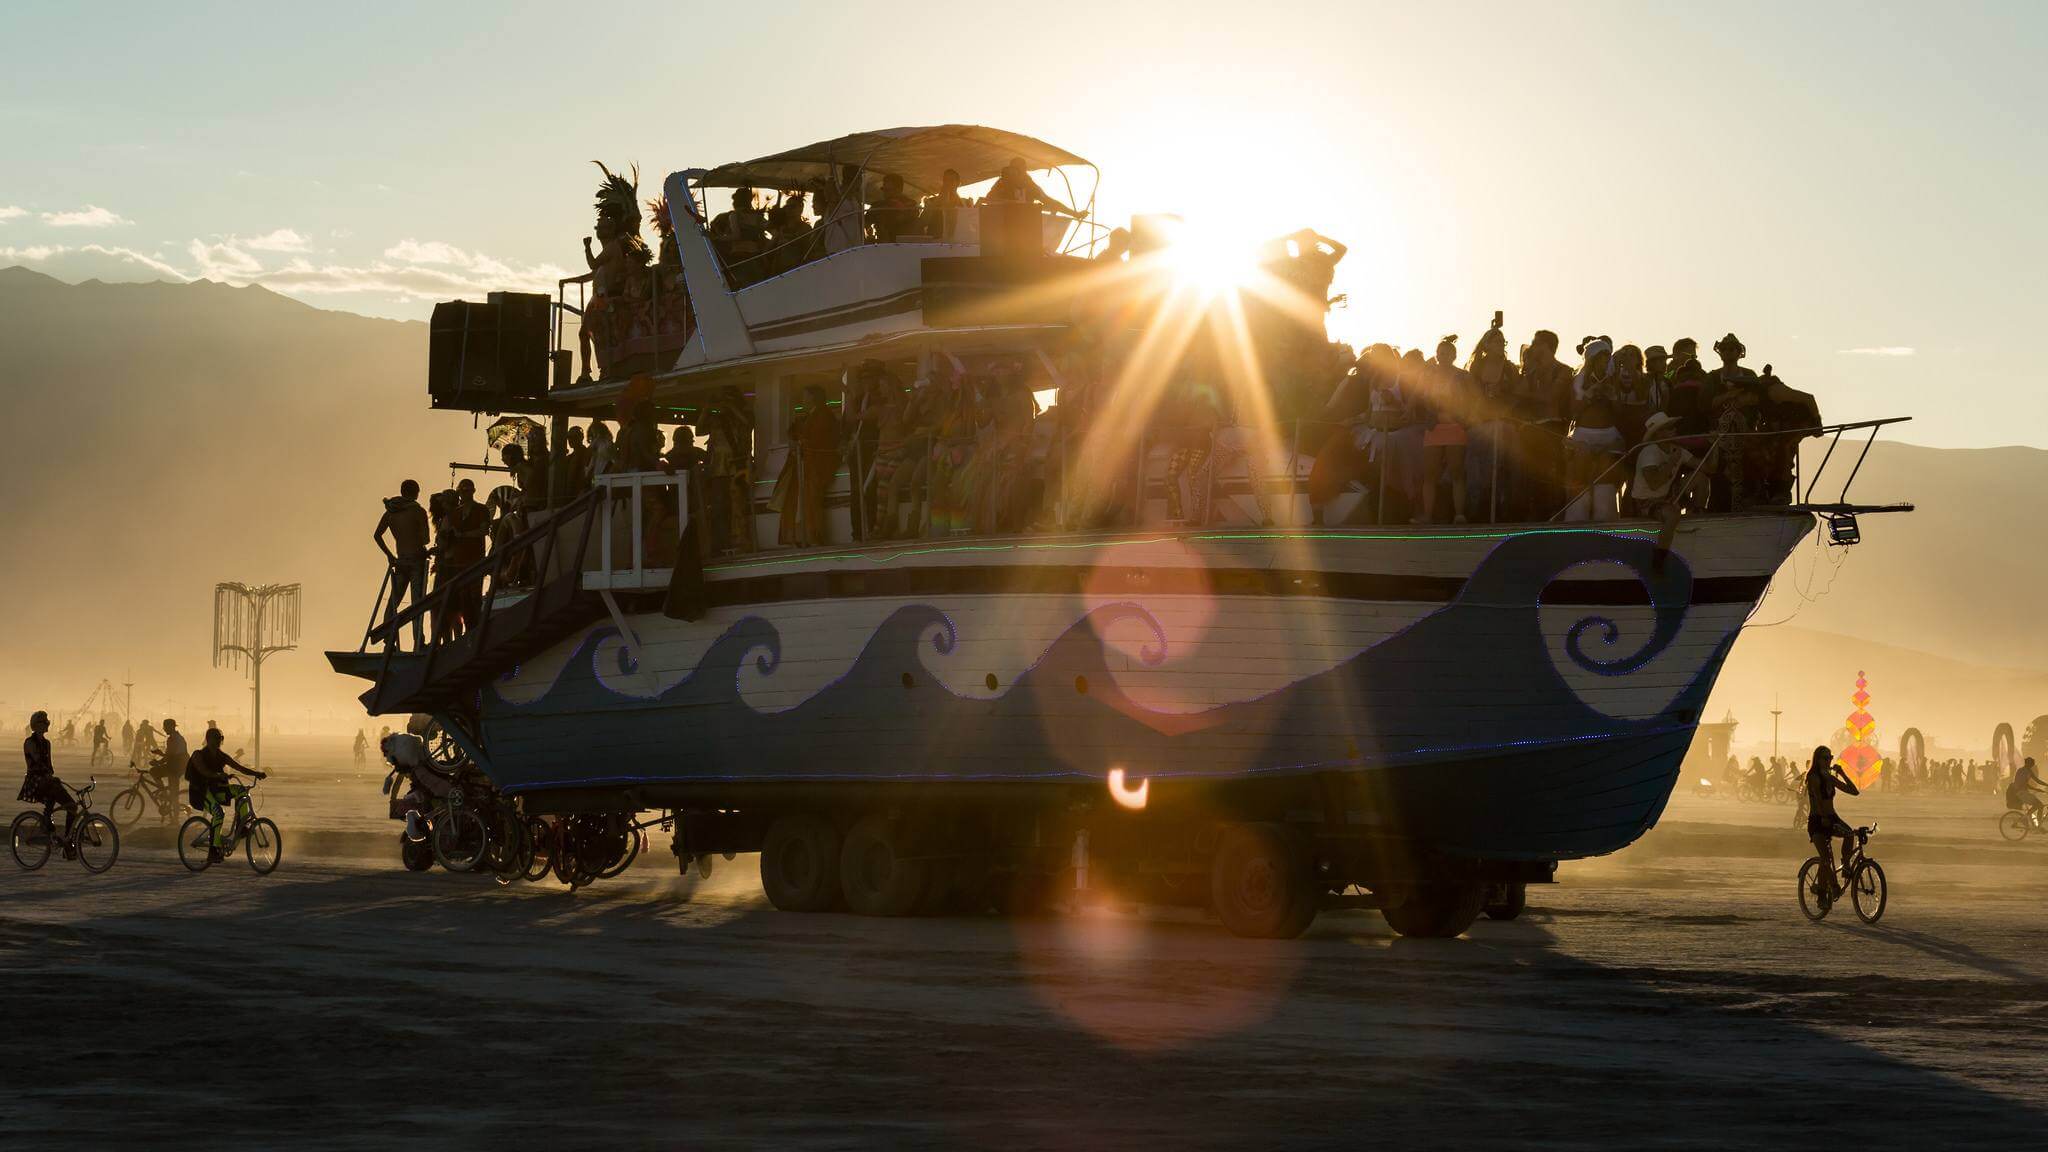 Boat installation at Burning Man Festival